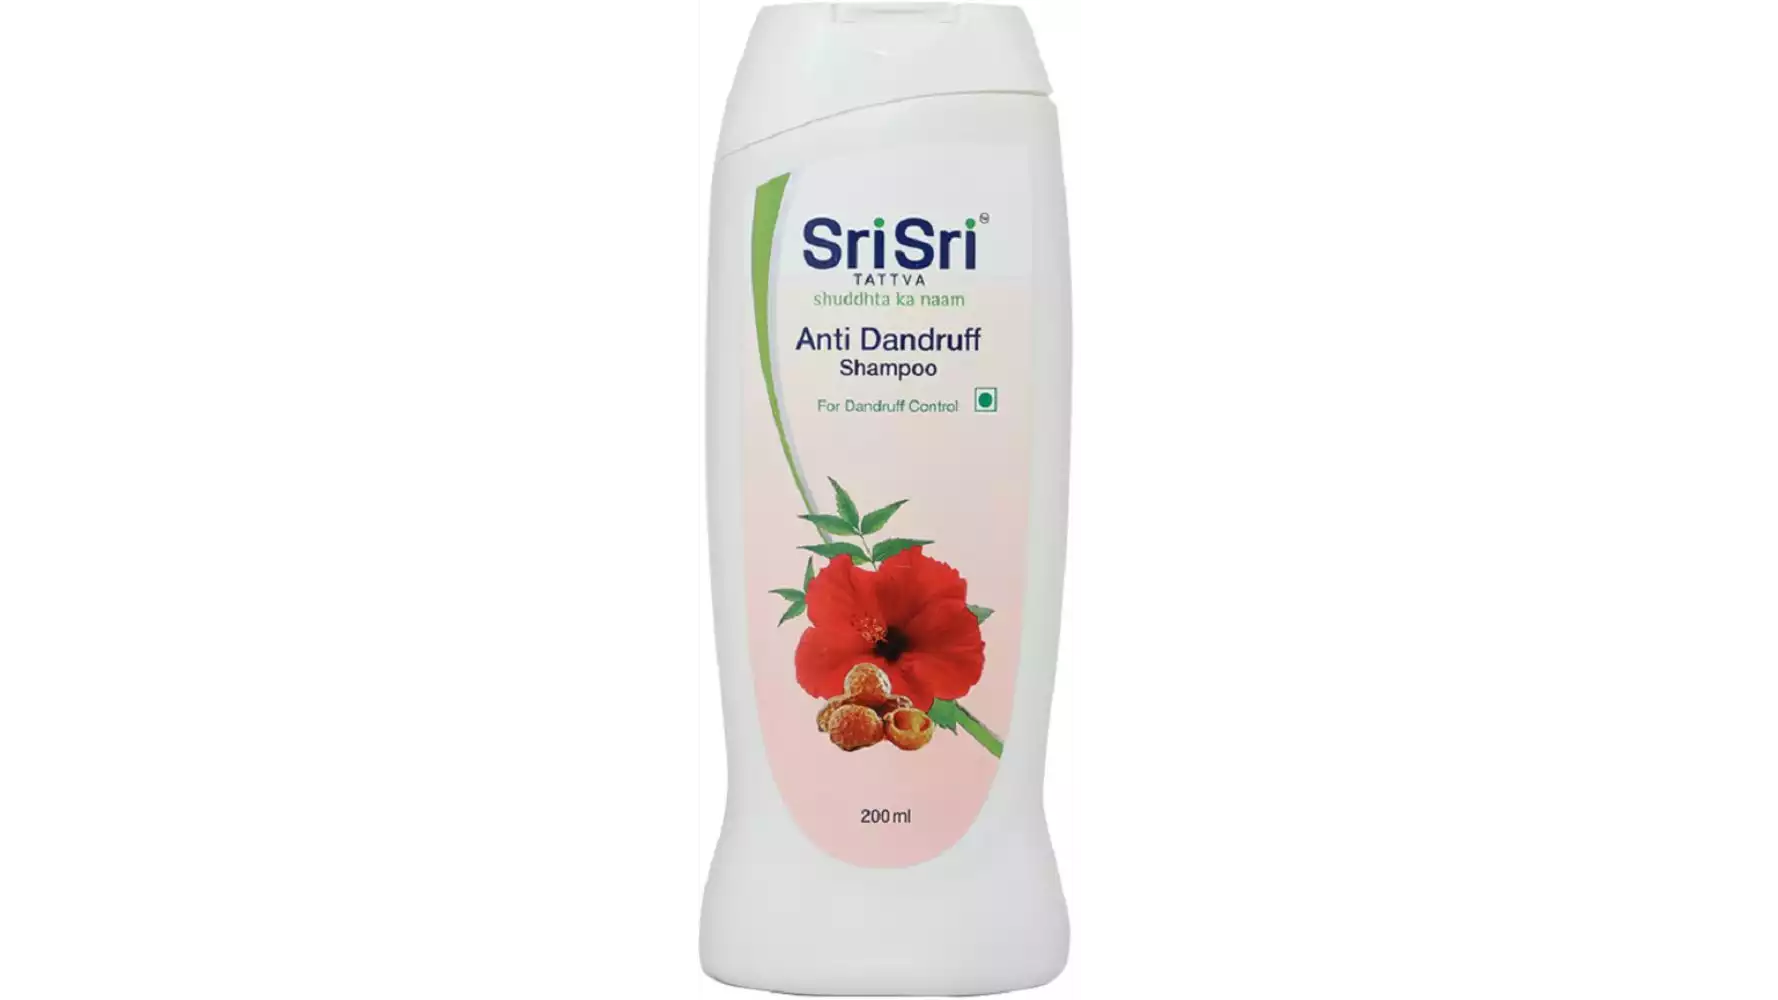 Sri Sri Tattva Anti Dandruff Shampoo (200ml)